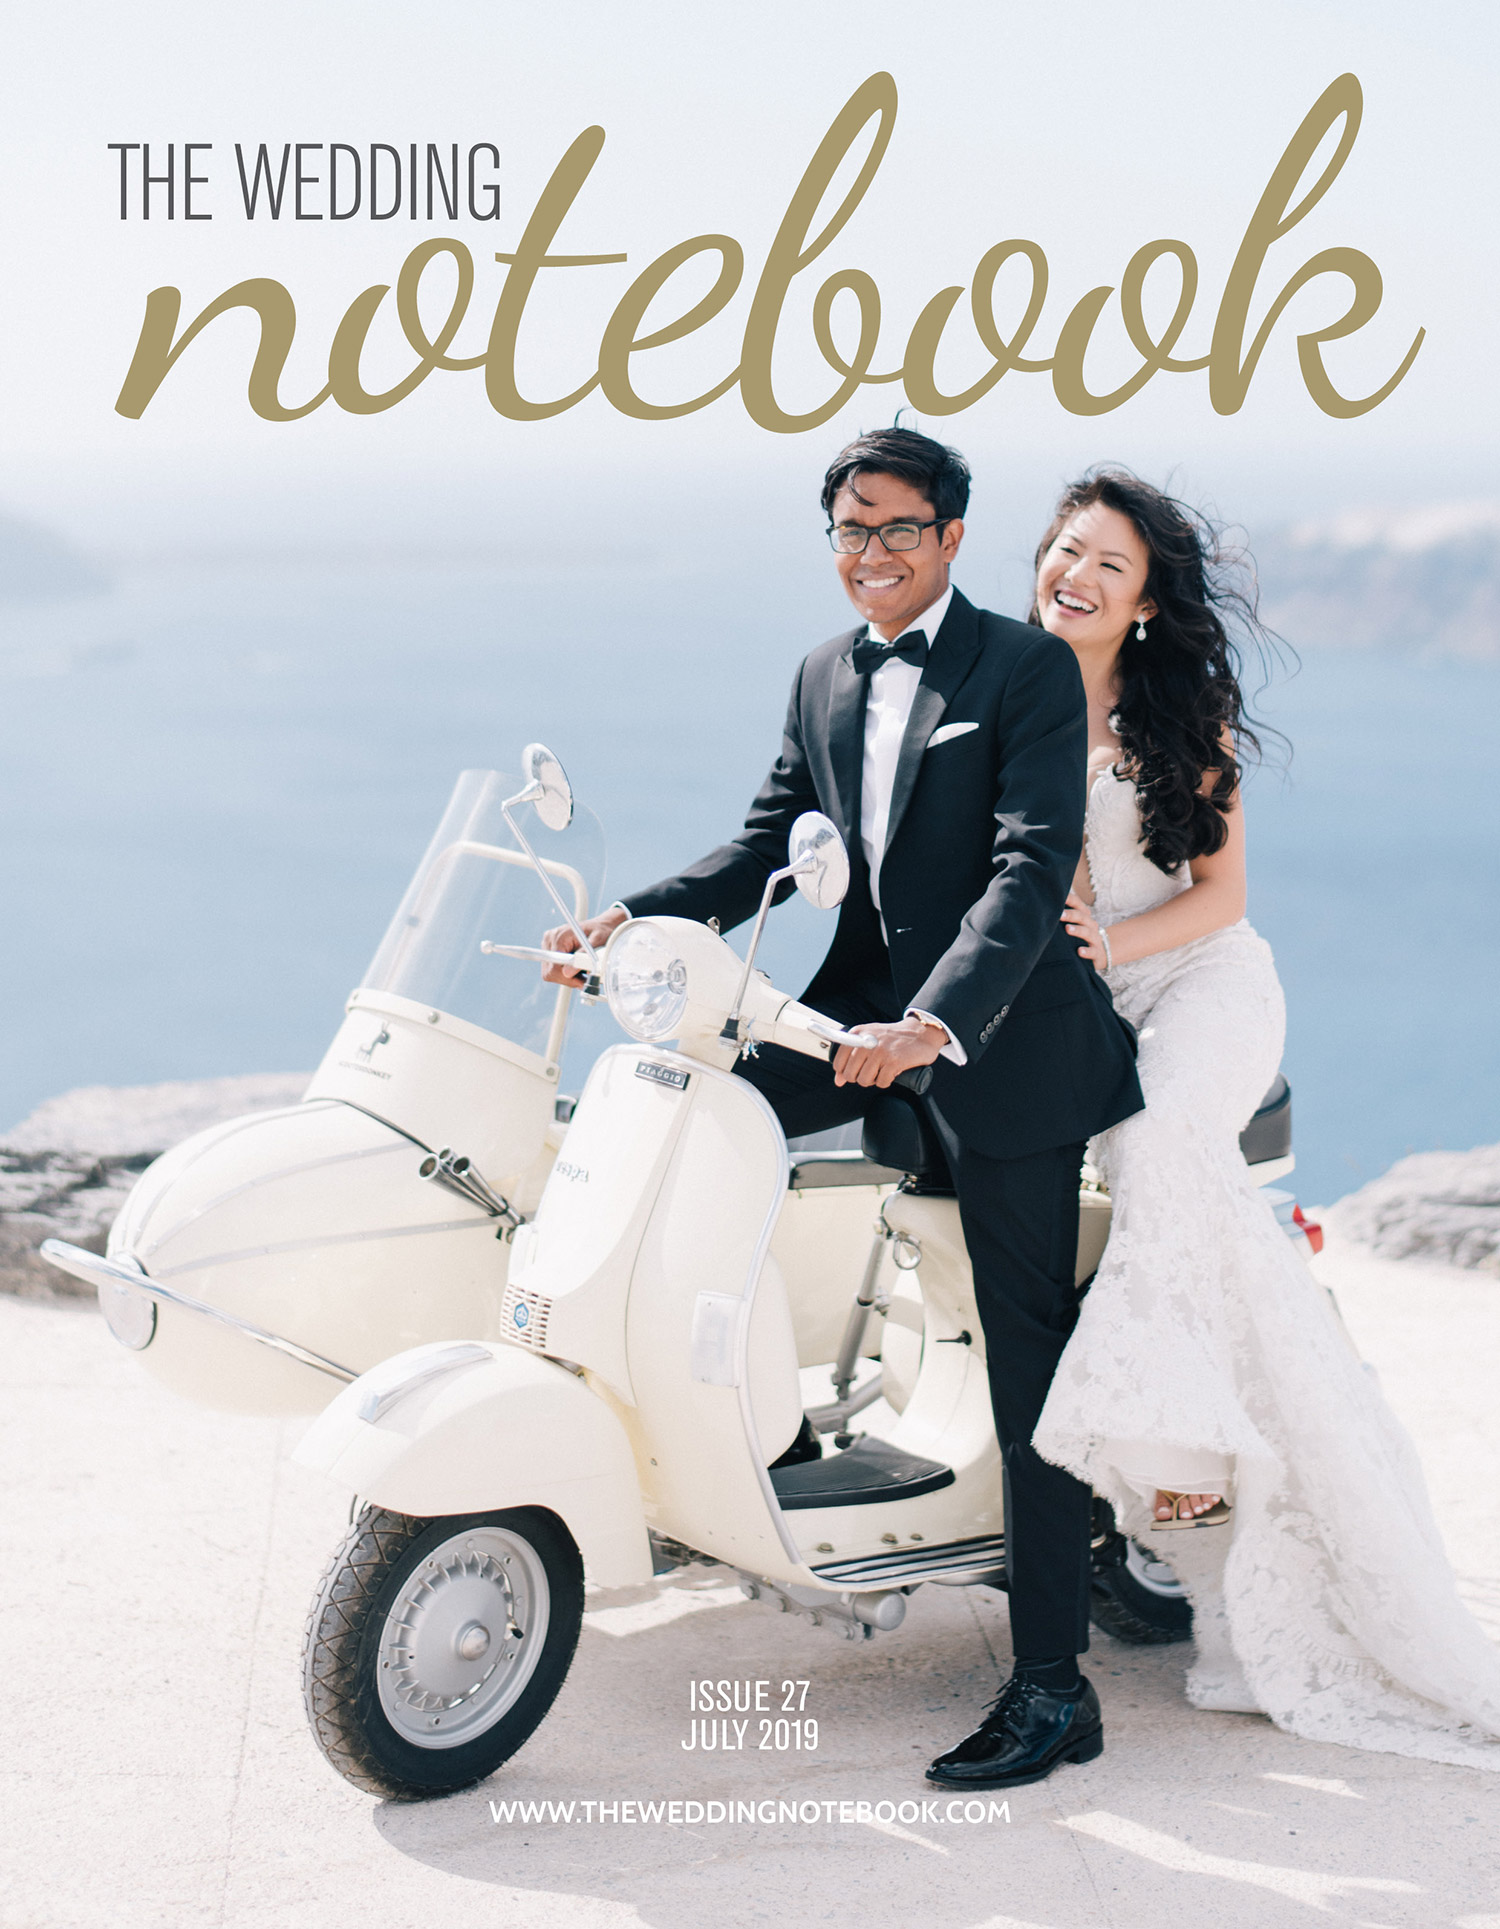 The Wedding Notebook online magazine - destination issue